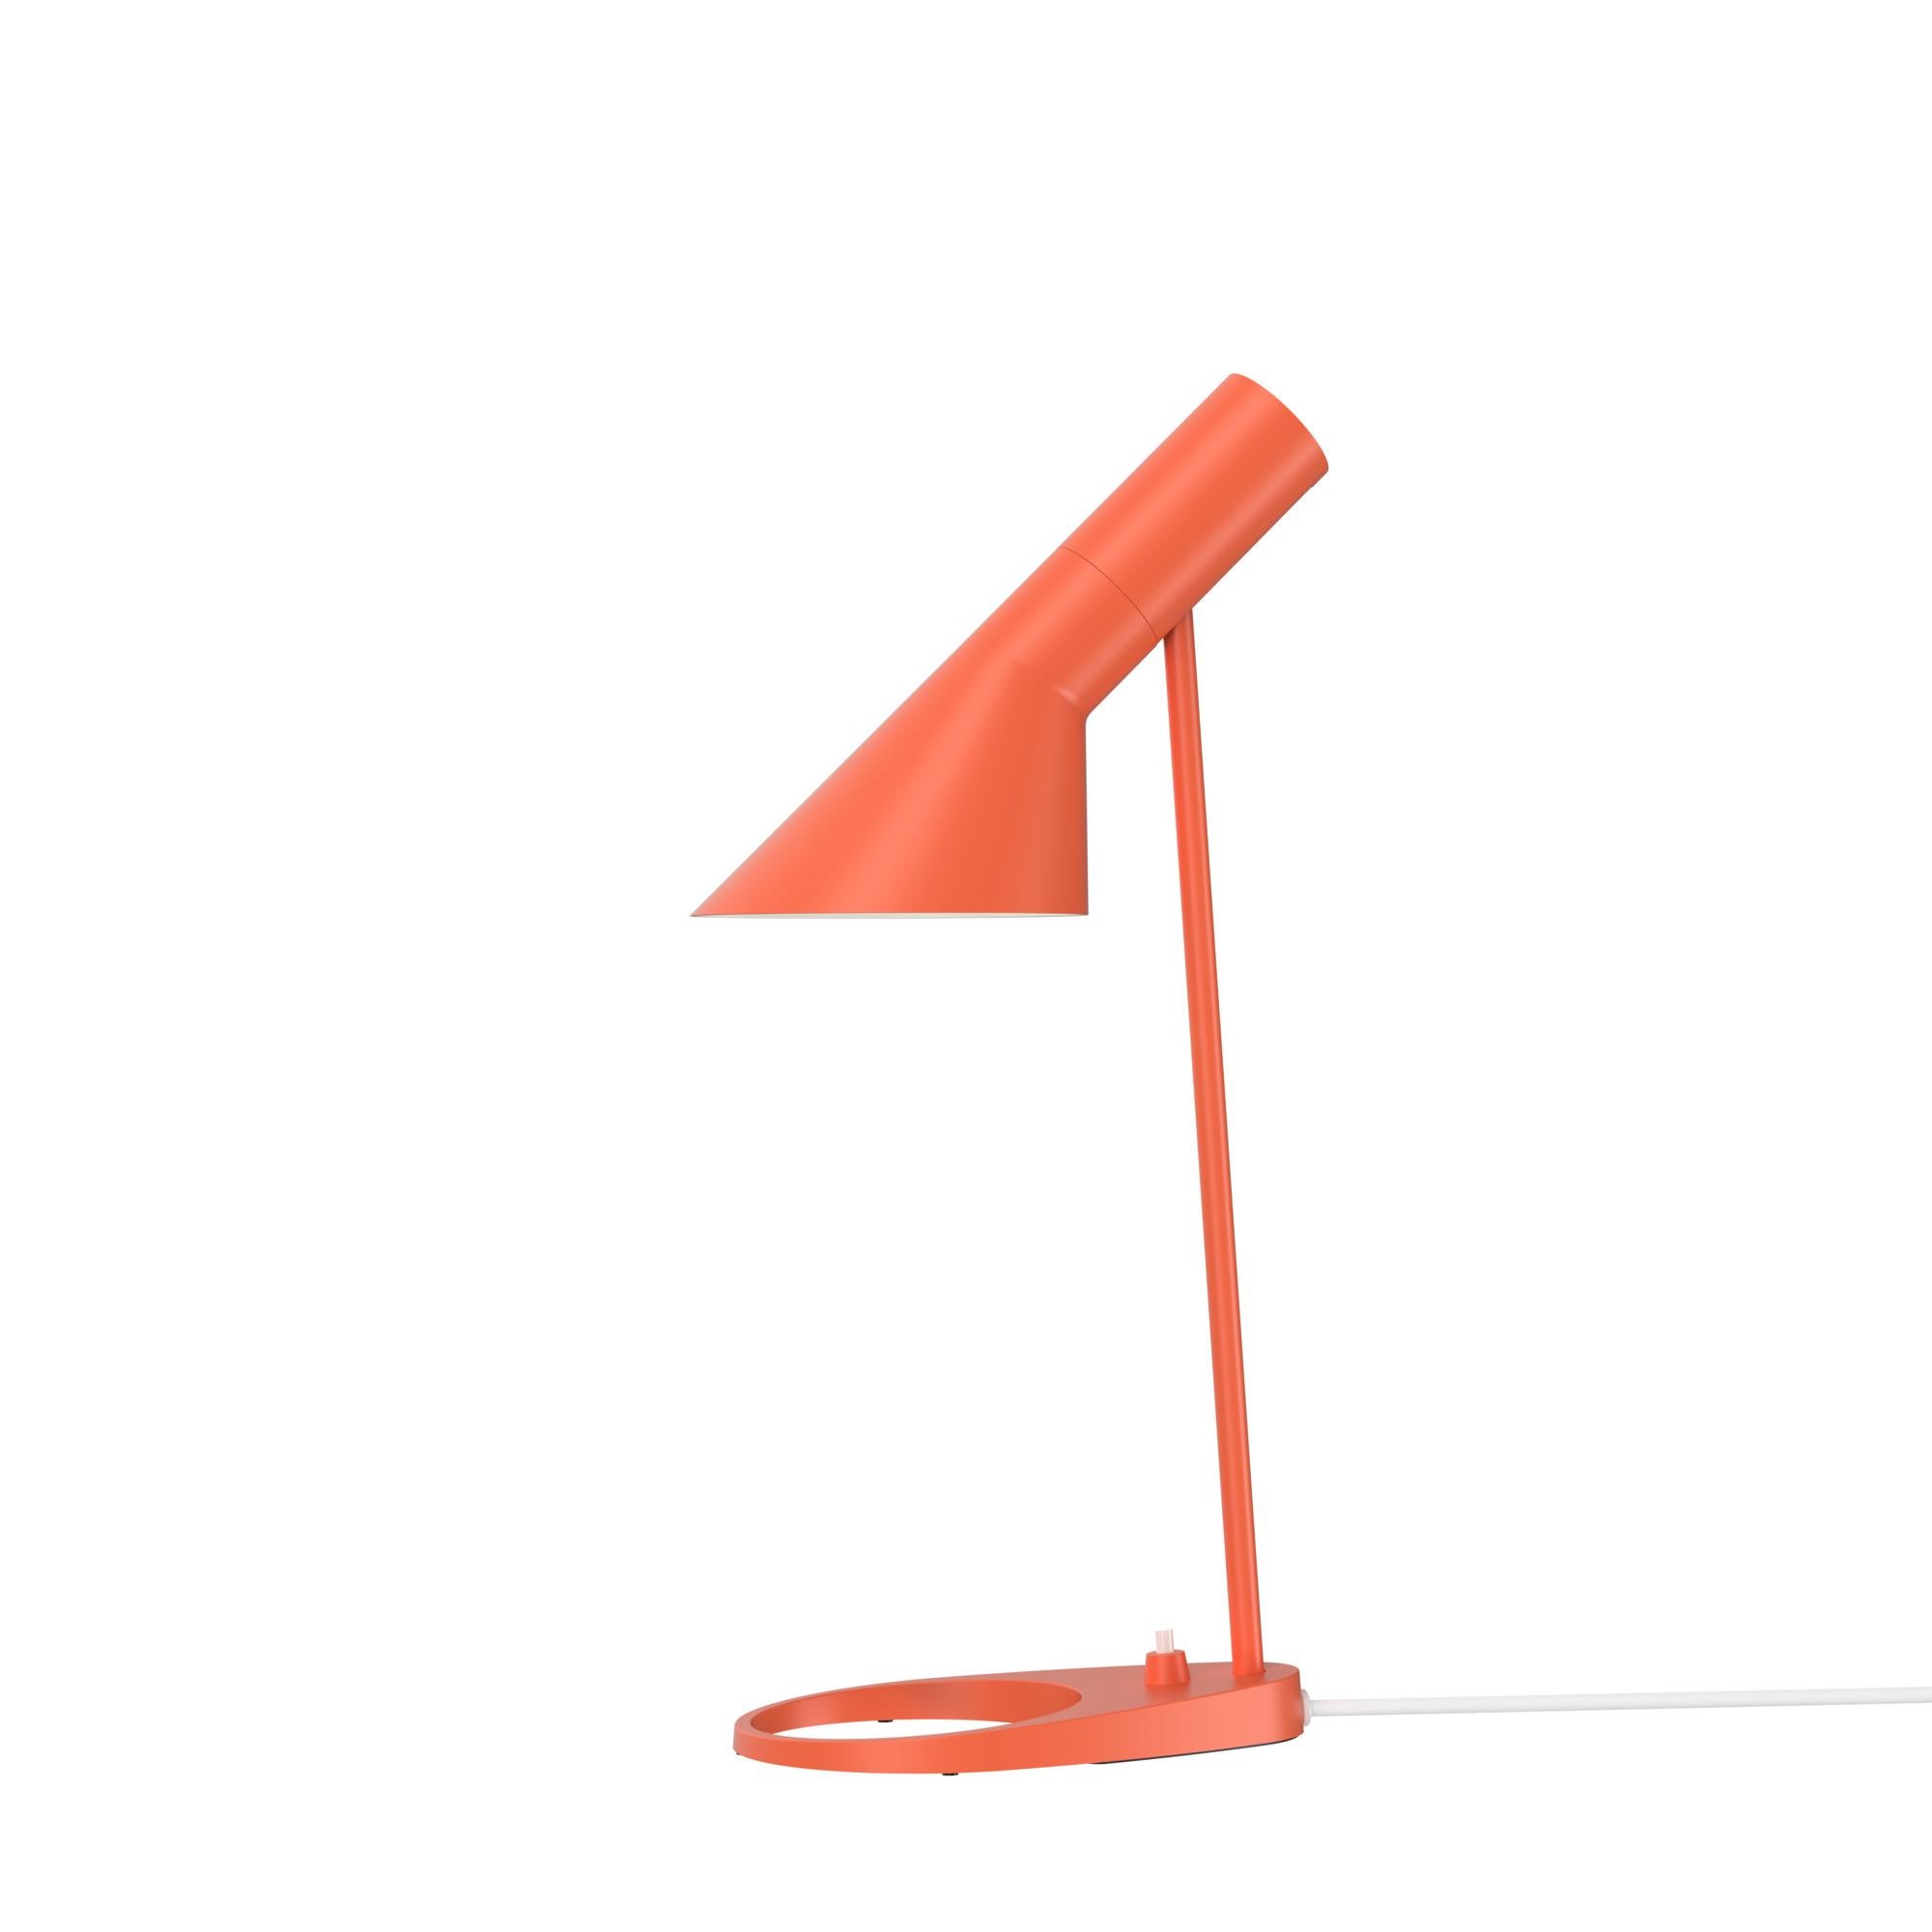 Arne Jacobsen 'AJ Mini' Table Lamp in Soft Lemon for Louis Poulsen For Sale 9